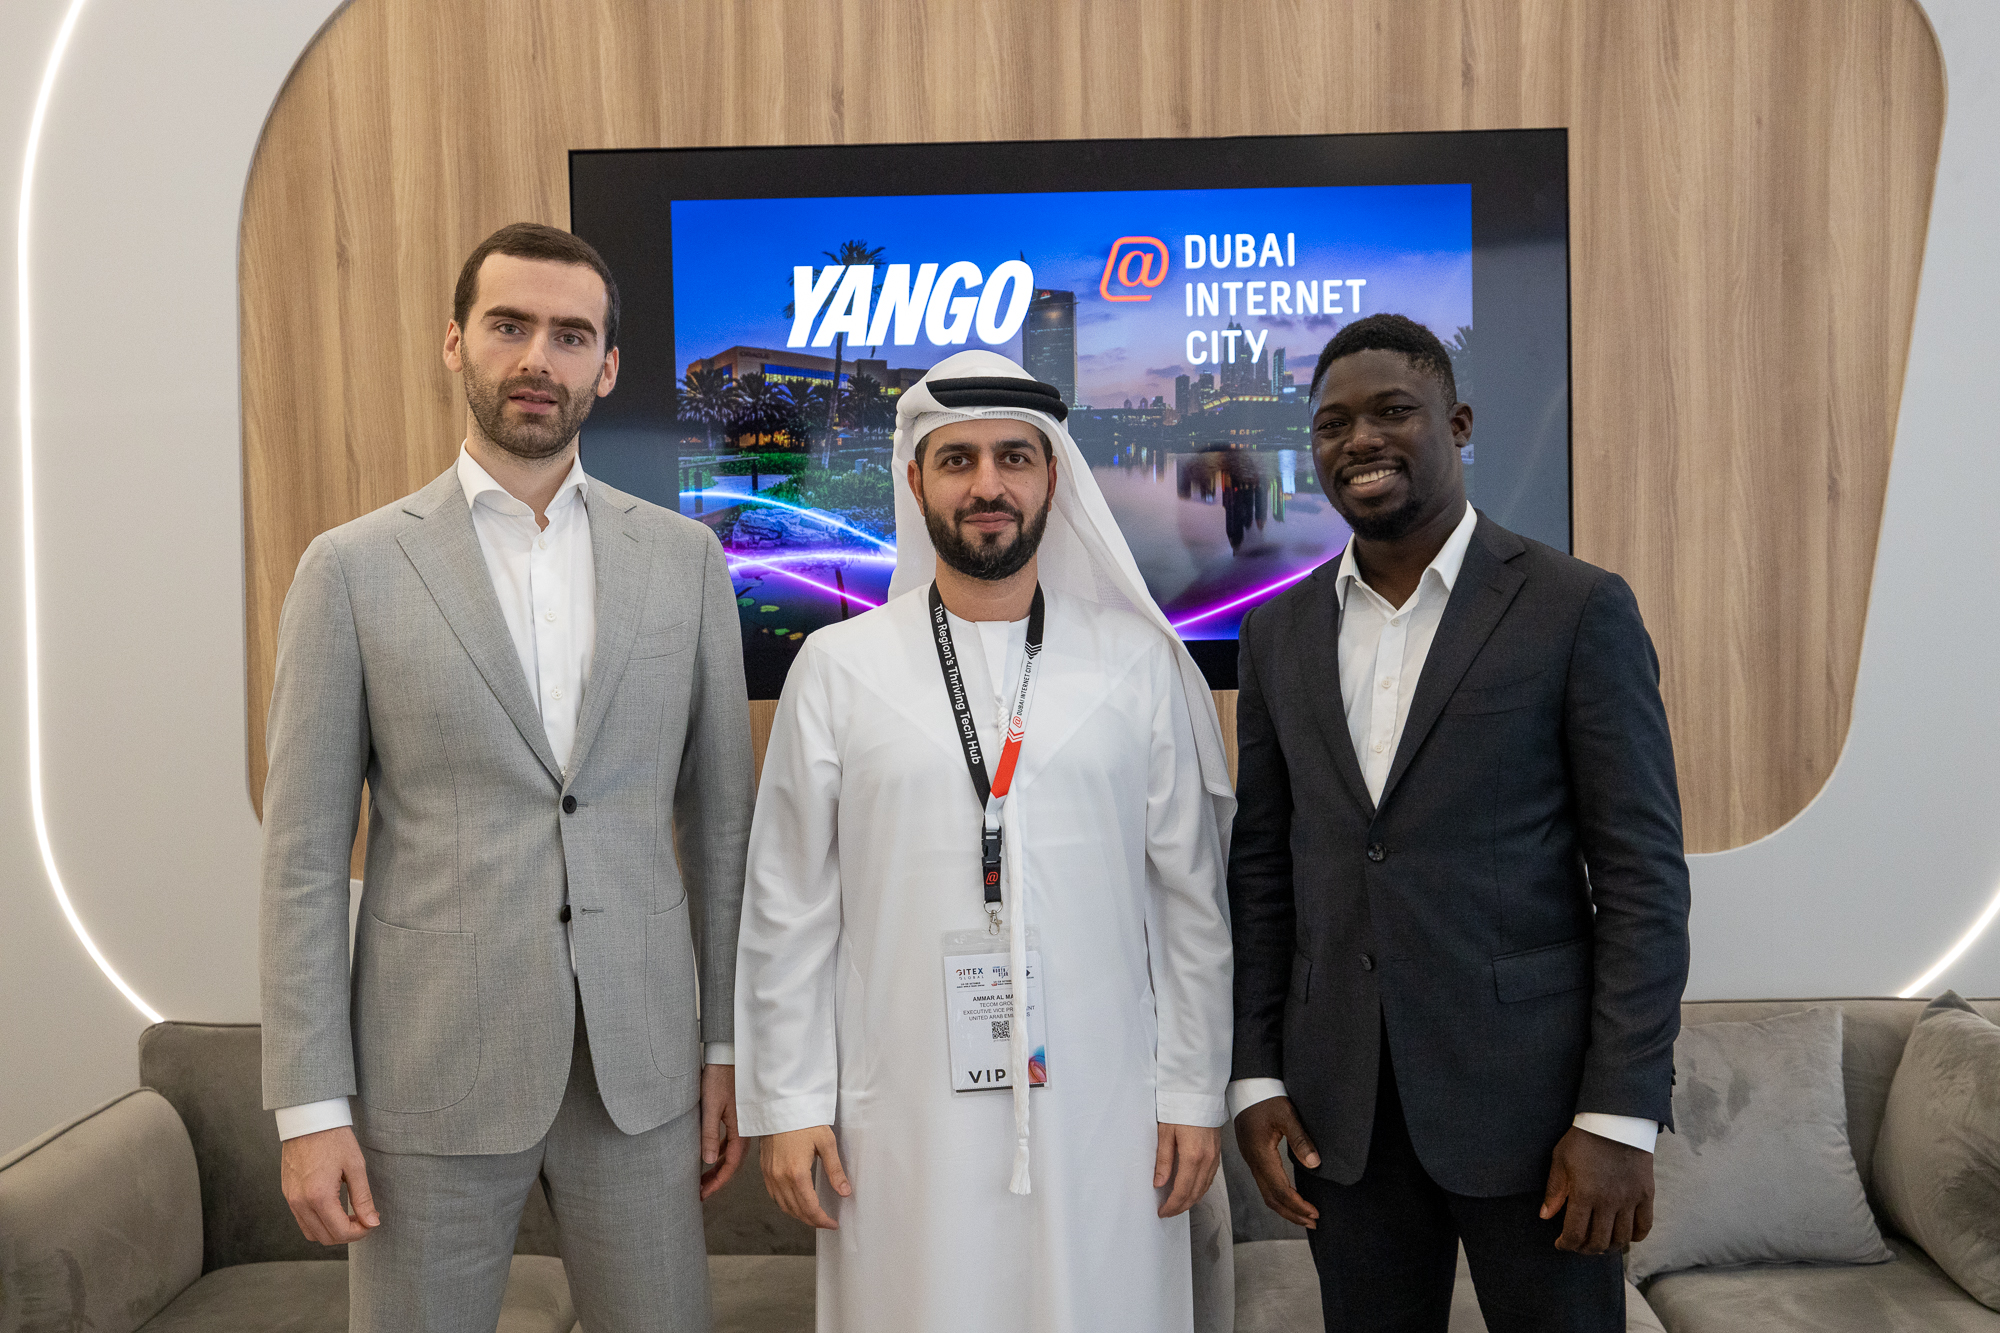 قامت شركة Yango بتوسيع مكاتبها إلى مدينة دبي للإنترنت